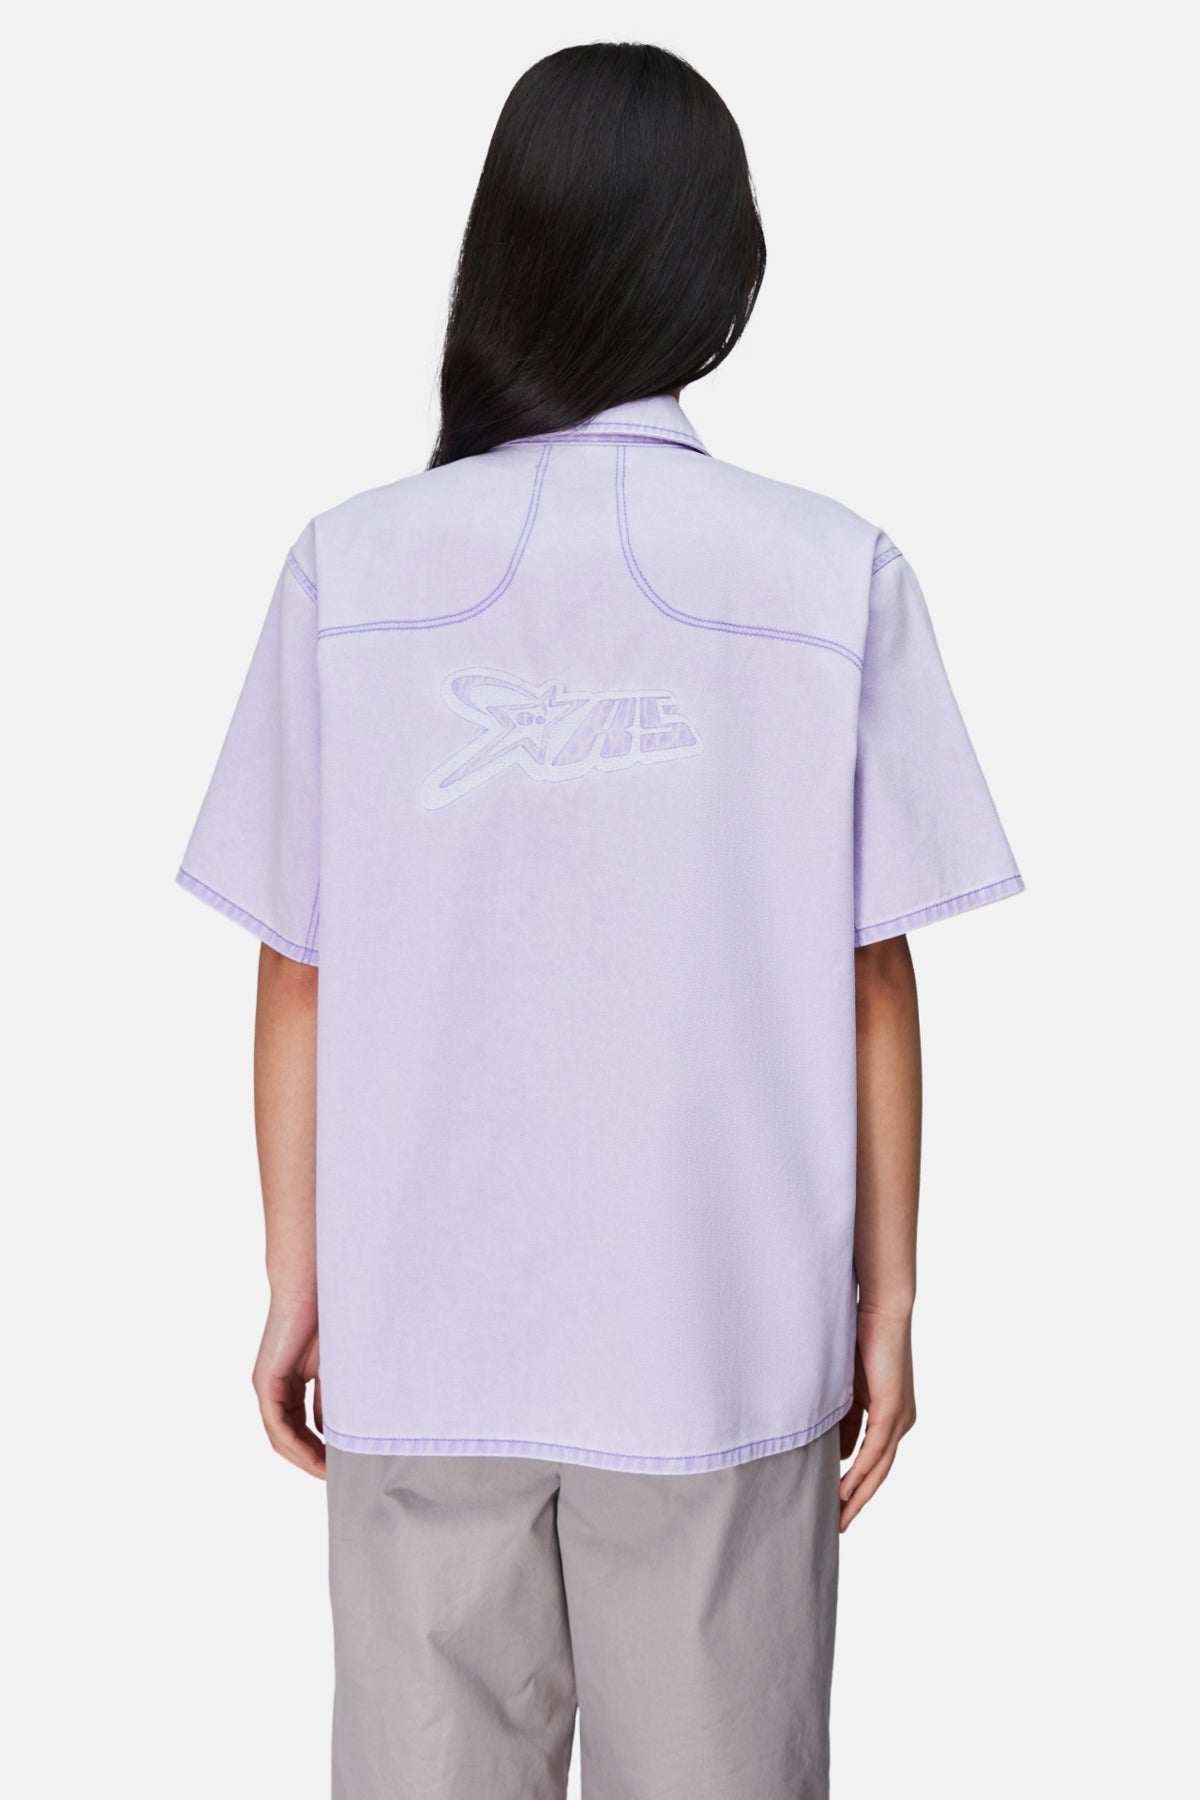 Logo Short Sleeve Shirt - Purple